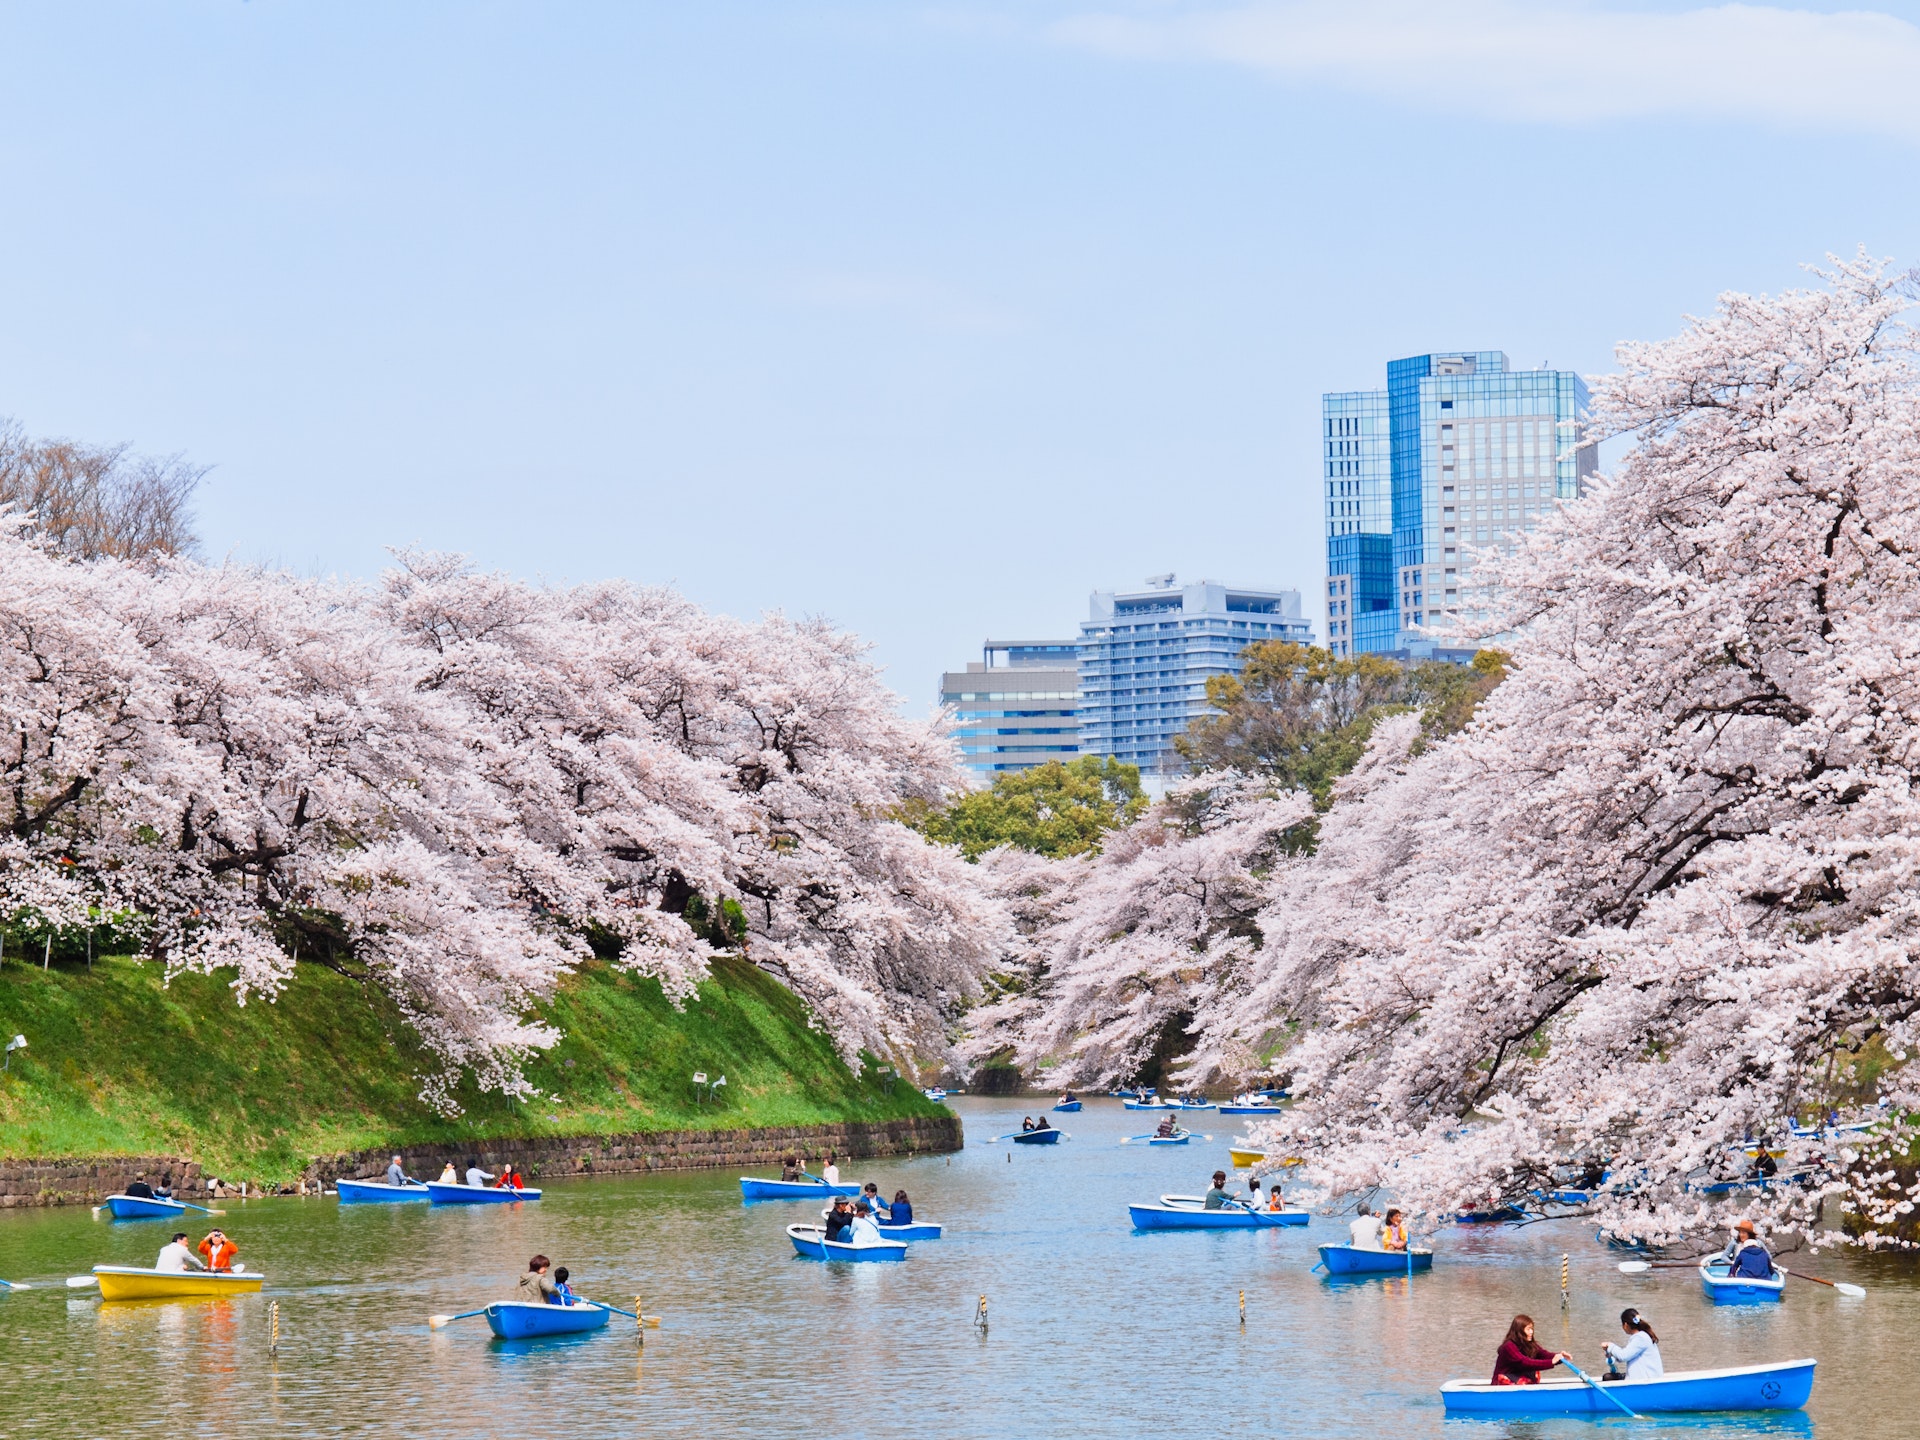  Els millors moments per visitar Tòquio: des de les flors de cirerer de primavera fins a les llums d'hivern